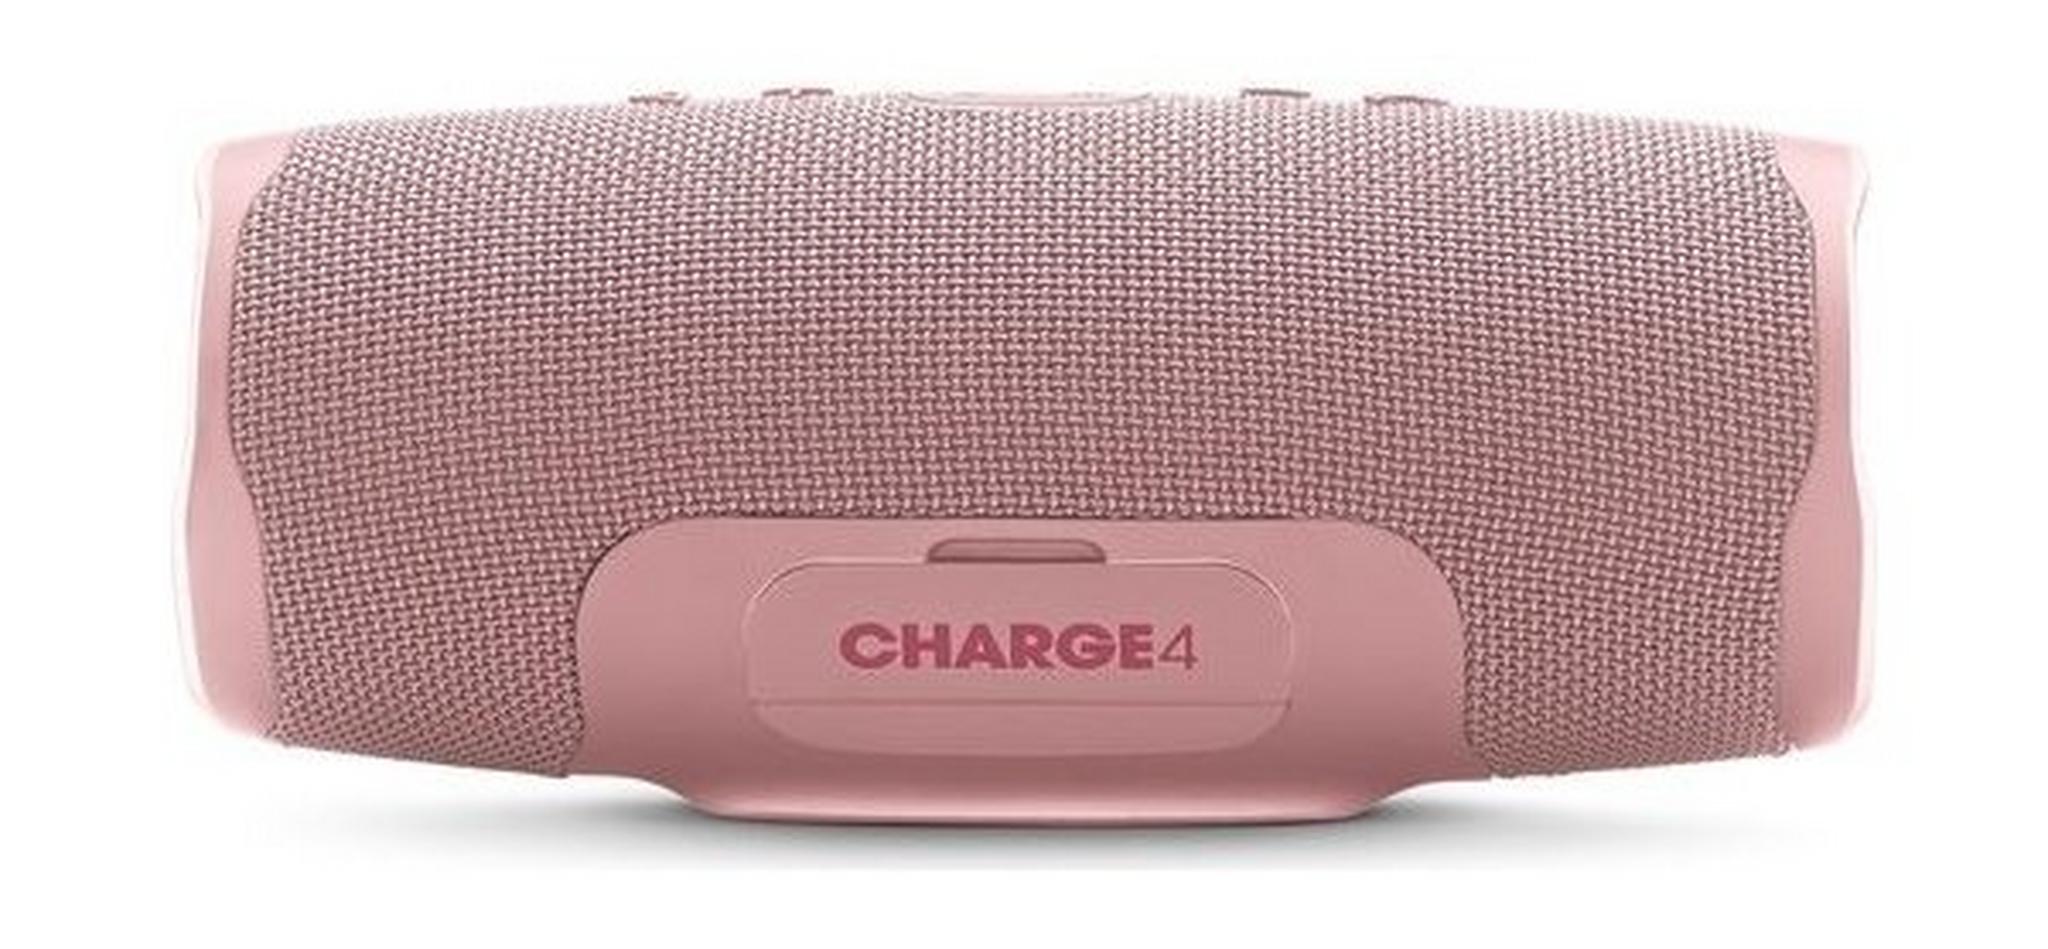 JBL Charge 4 Waterproof Portable Bluetooth Speaker - Pink